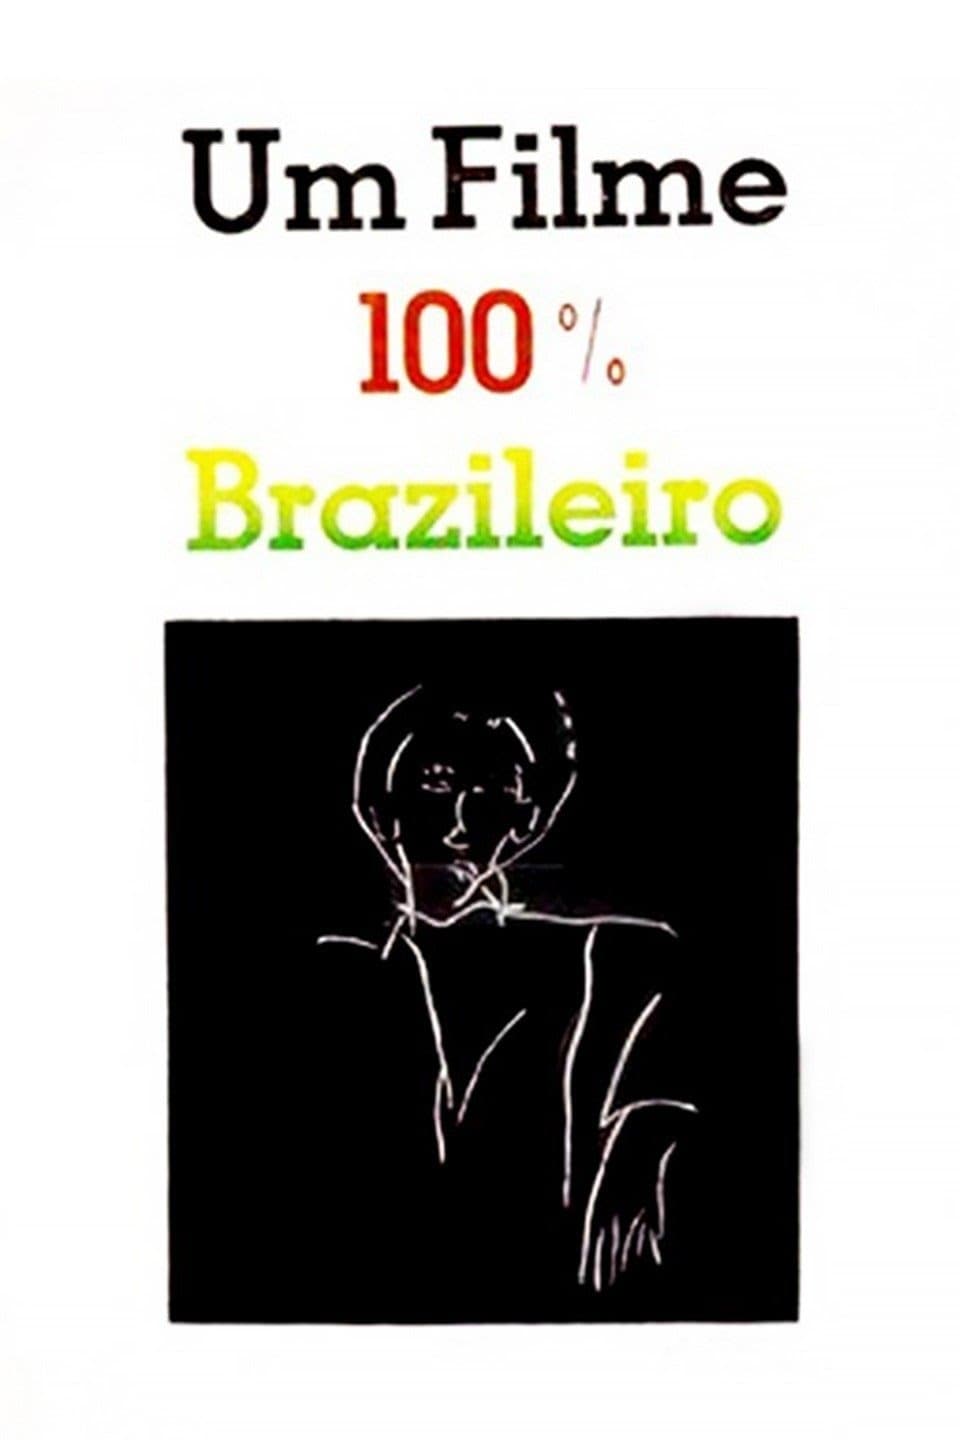 Um Filme 100% Brasileiro